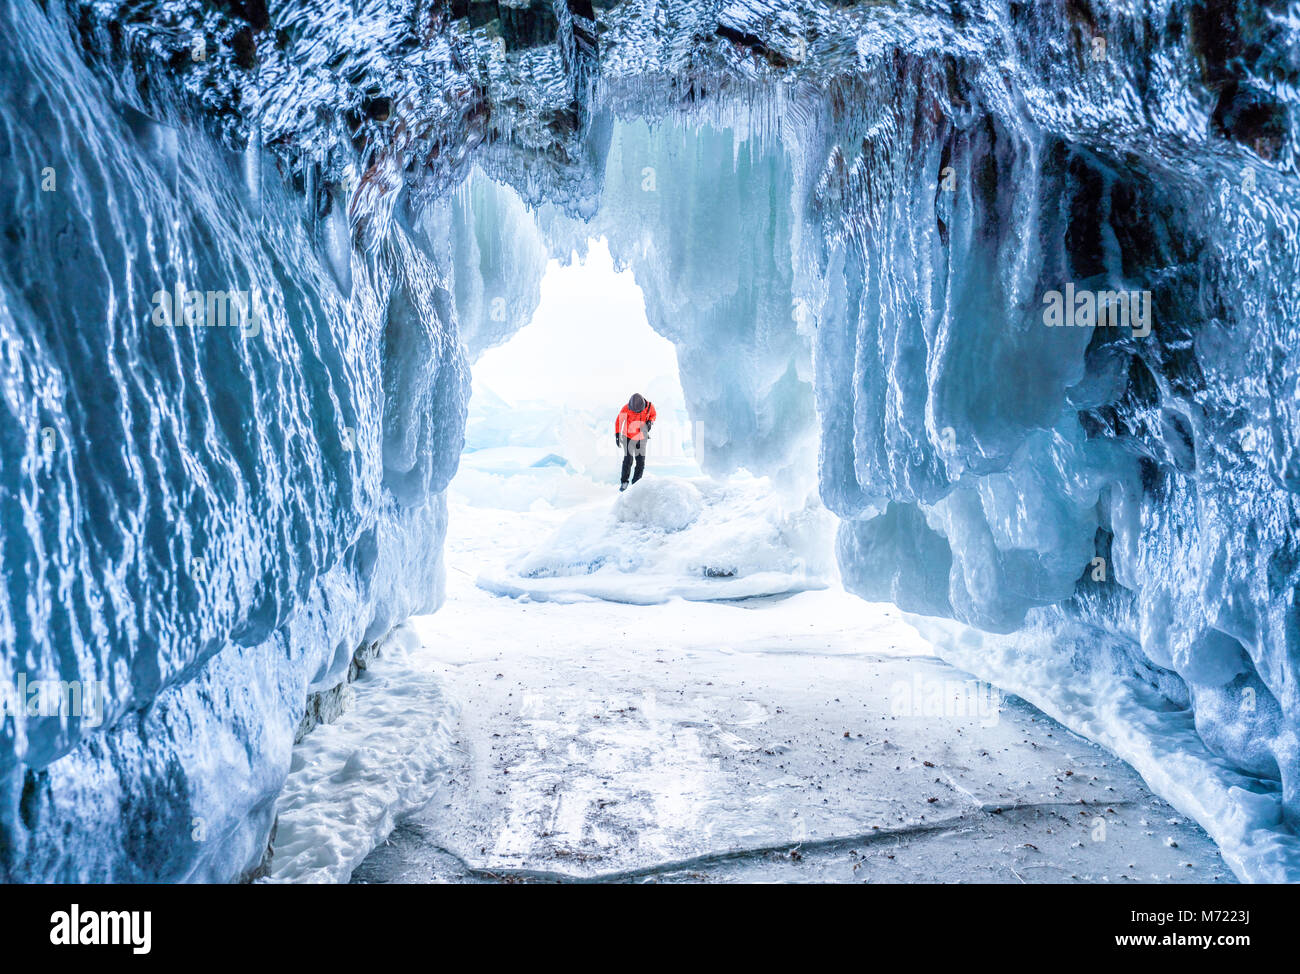 Paisaje invernal, cueva de hielo congelado con el joven fotógrafo de pie solo. Viajar en invierno Foto de stock